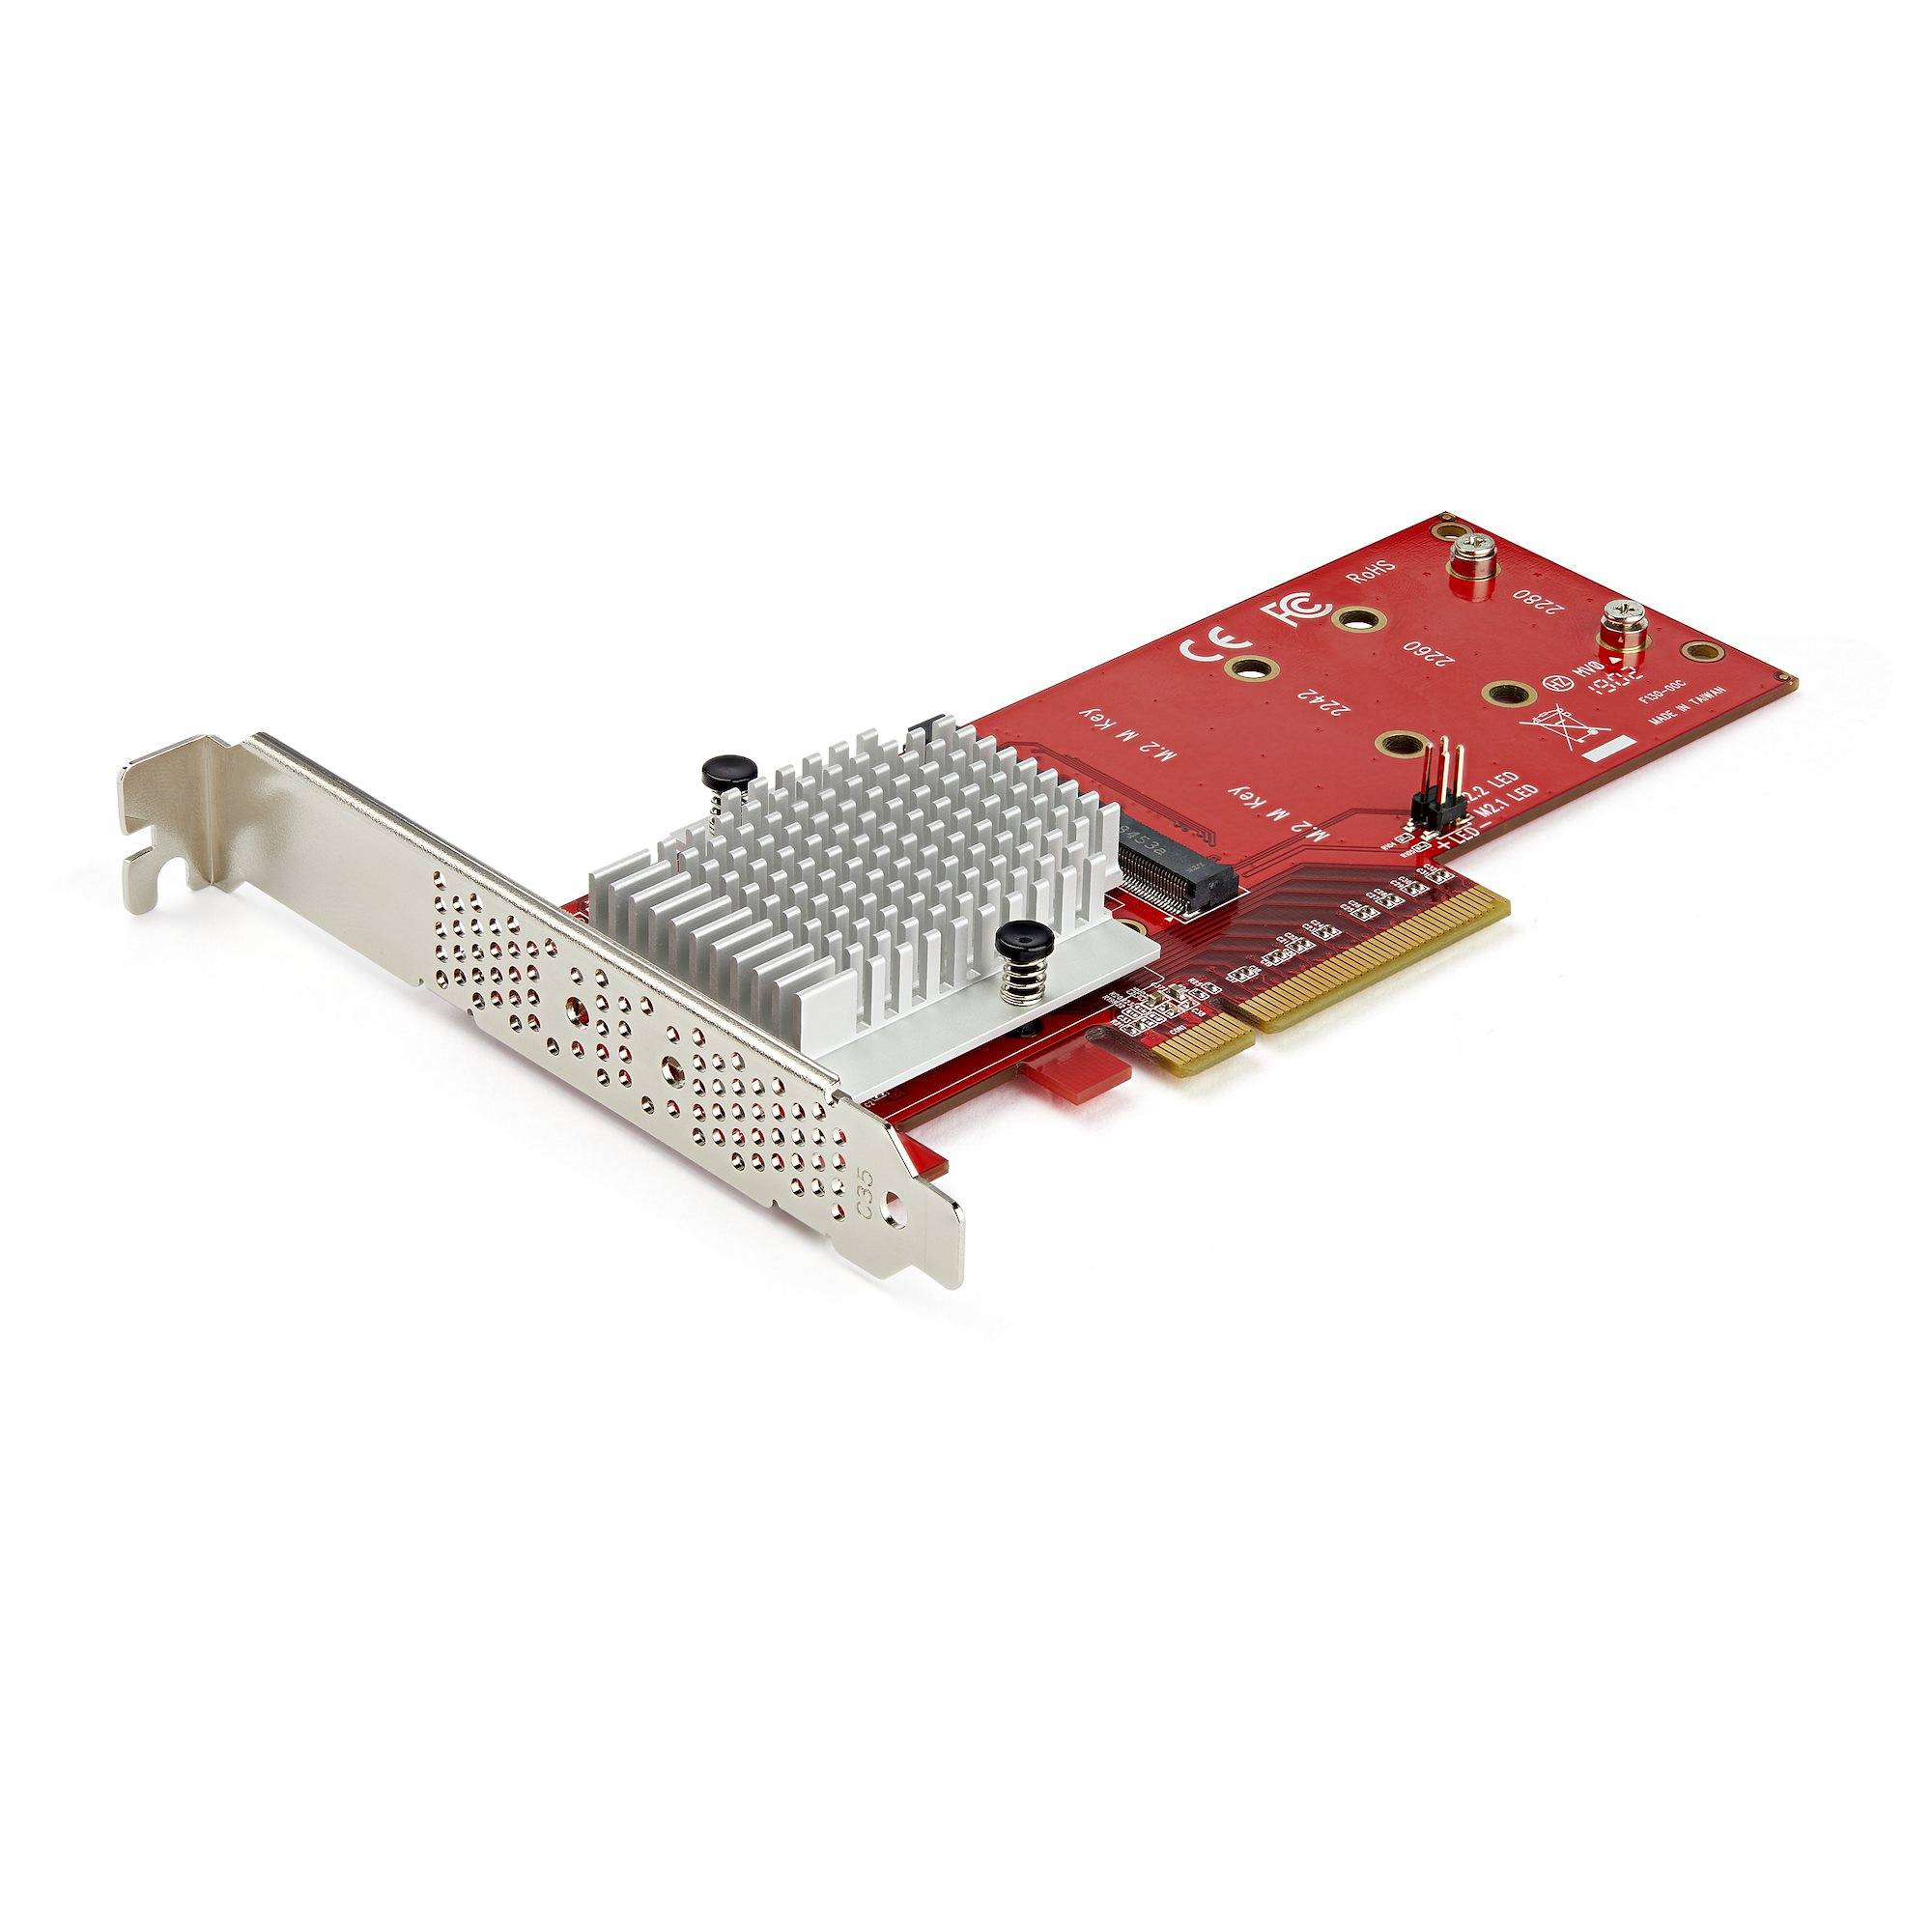 Rca Informatique - Image du produit : X8 DUAL M.2 PCIE SSD ADAPTER FOR PCIE NVME / AHCI M.2 SSDS